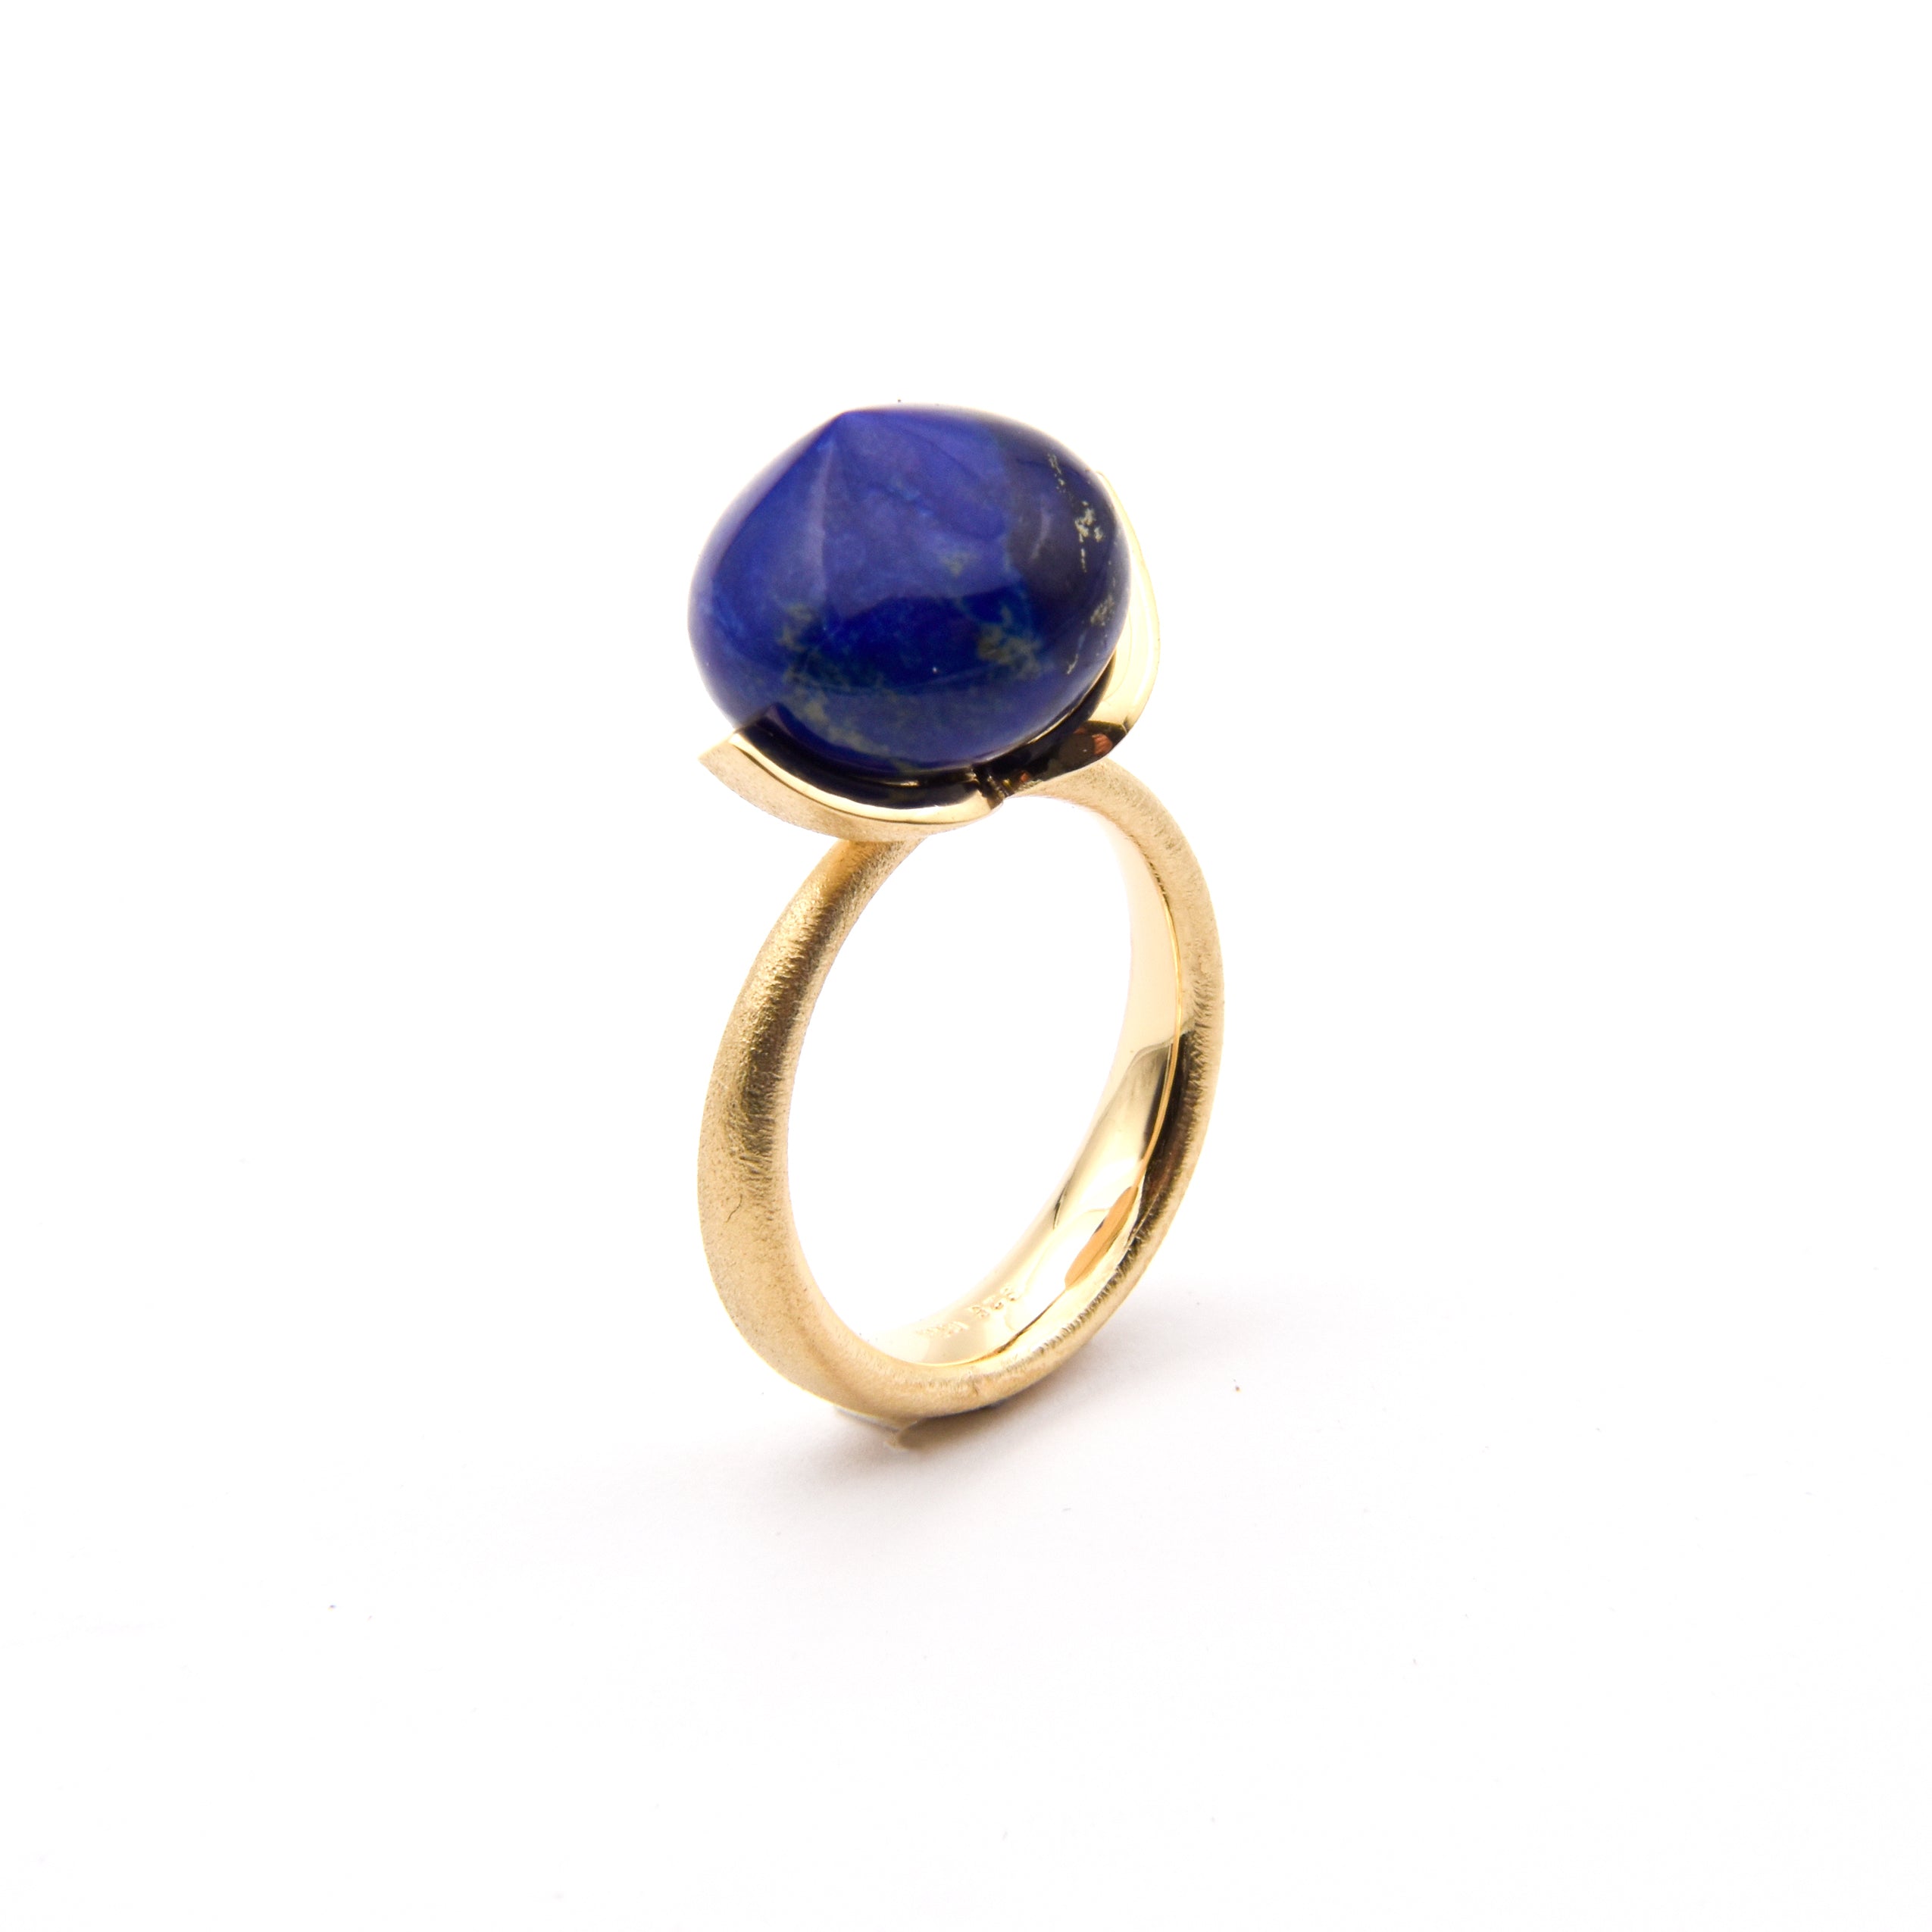 Dolce-ring "stor" med lapis lazuli 925/-